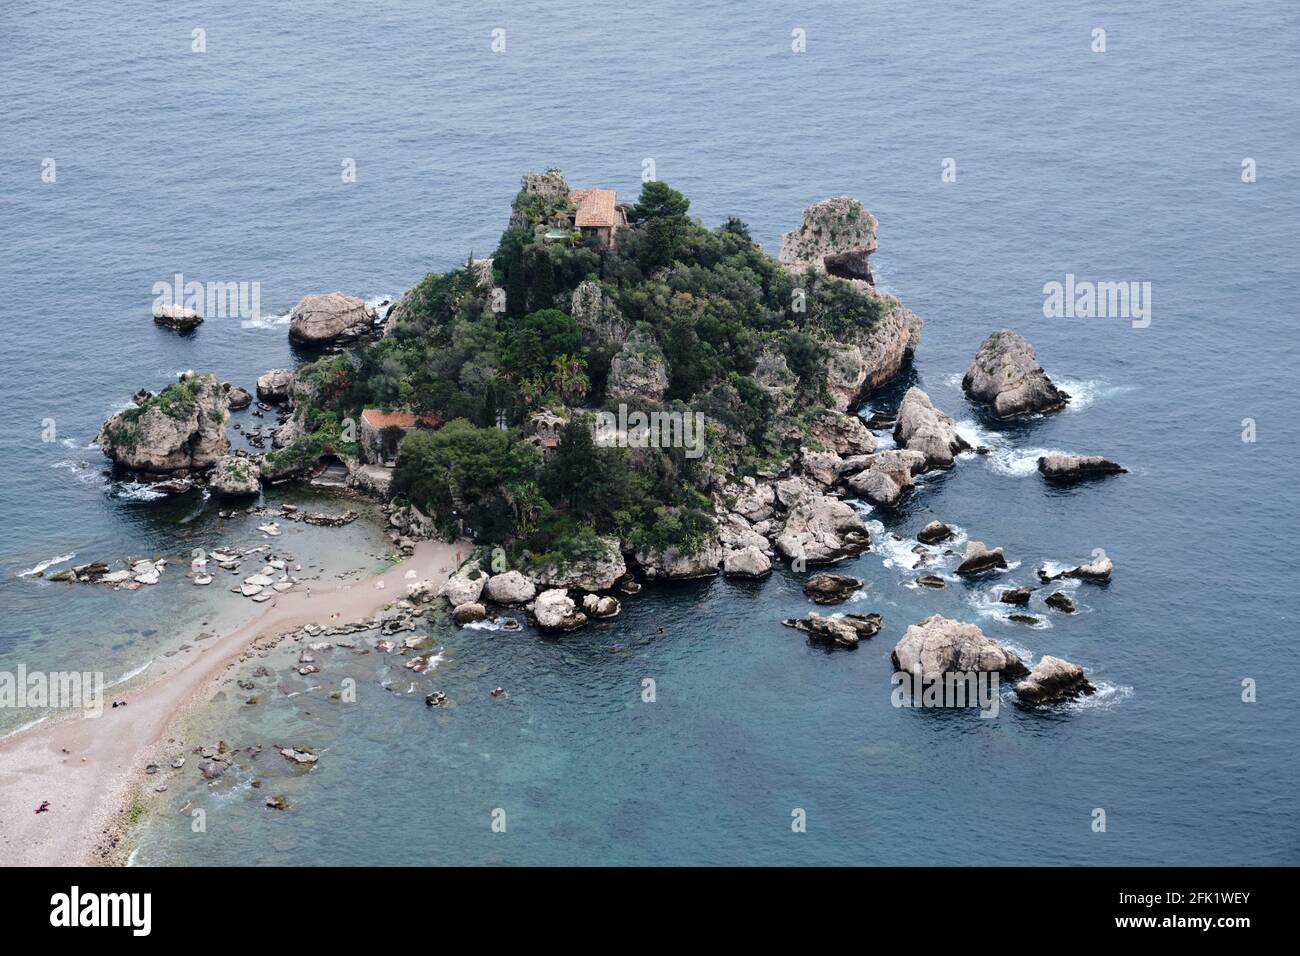 Isola Bella près de Taormina en Sicile, Italie. Connue sous le nom de la Perle de la mer Ionienne. Banque D'Images